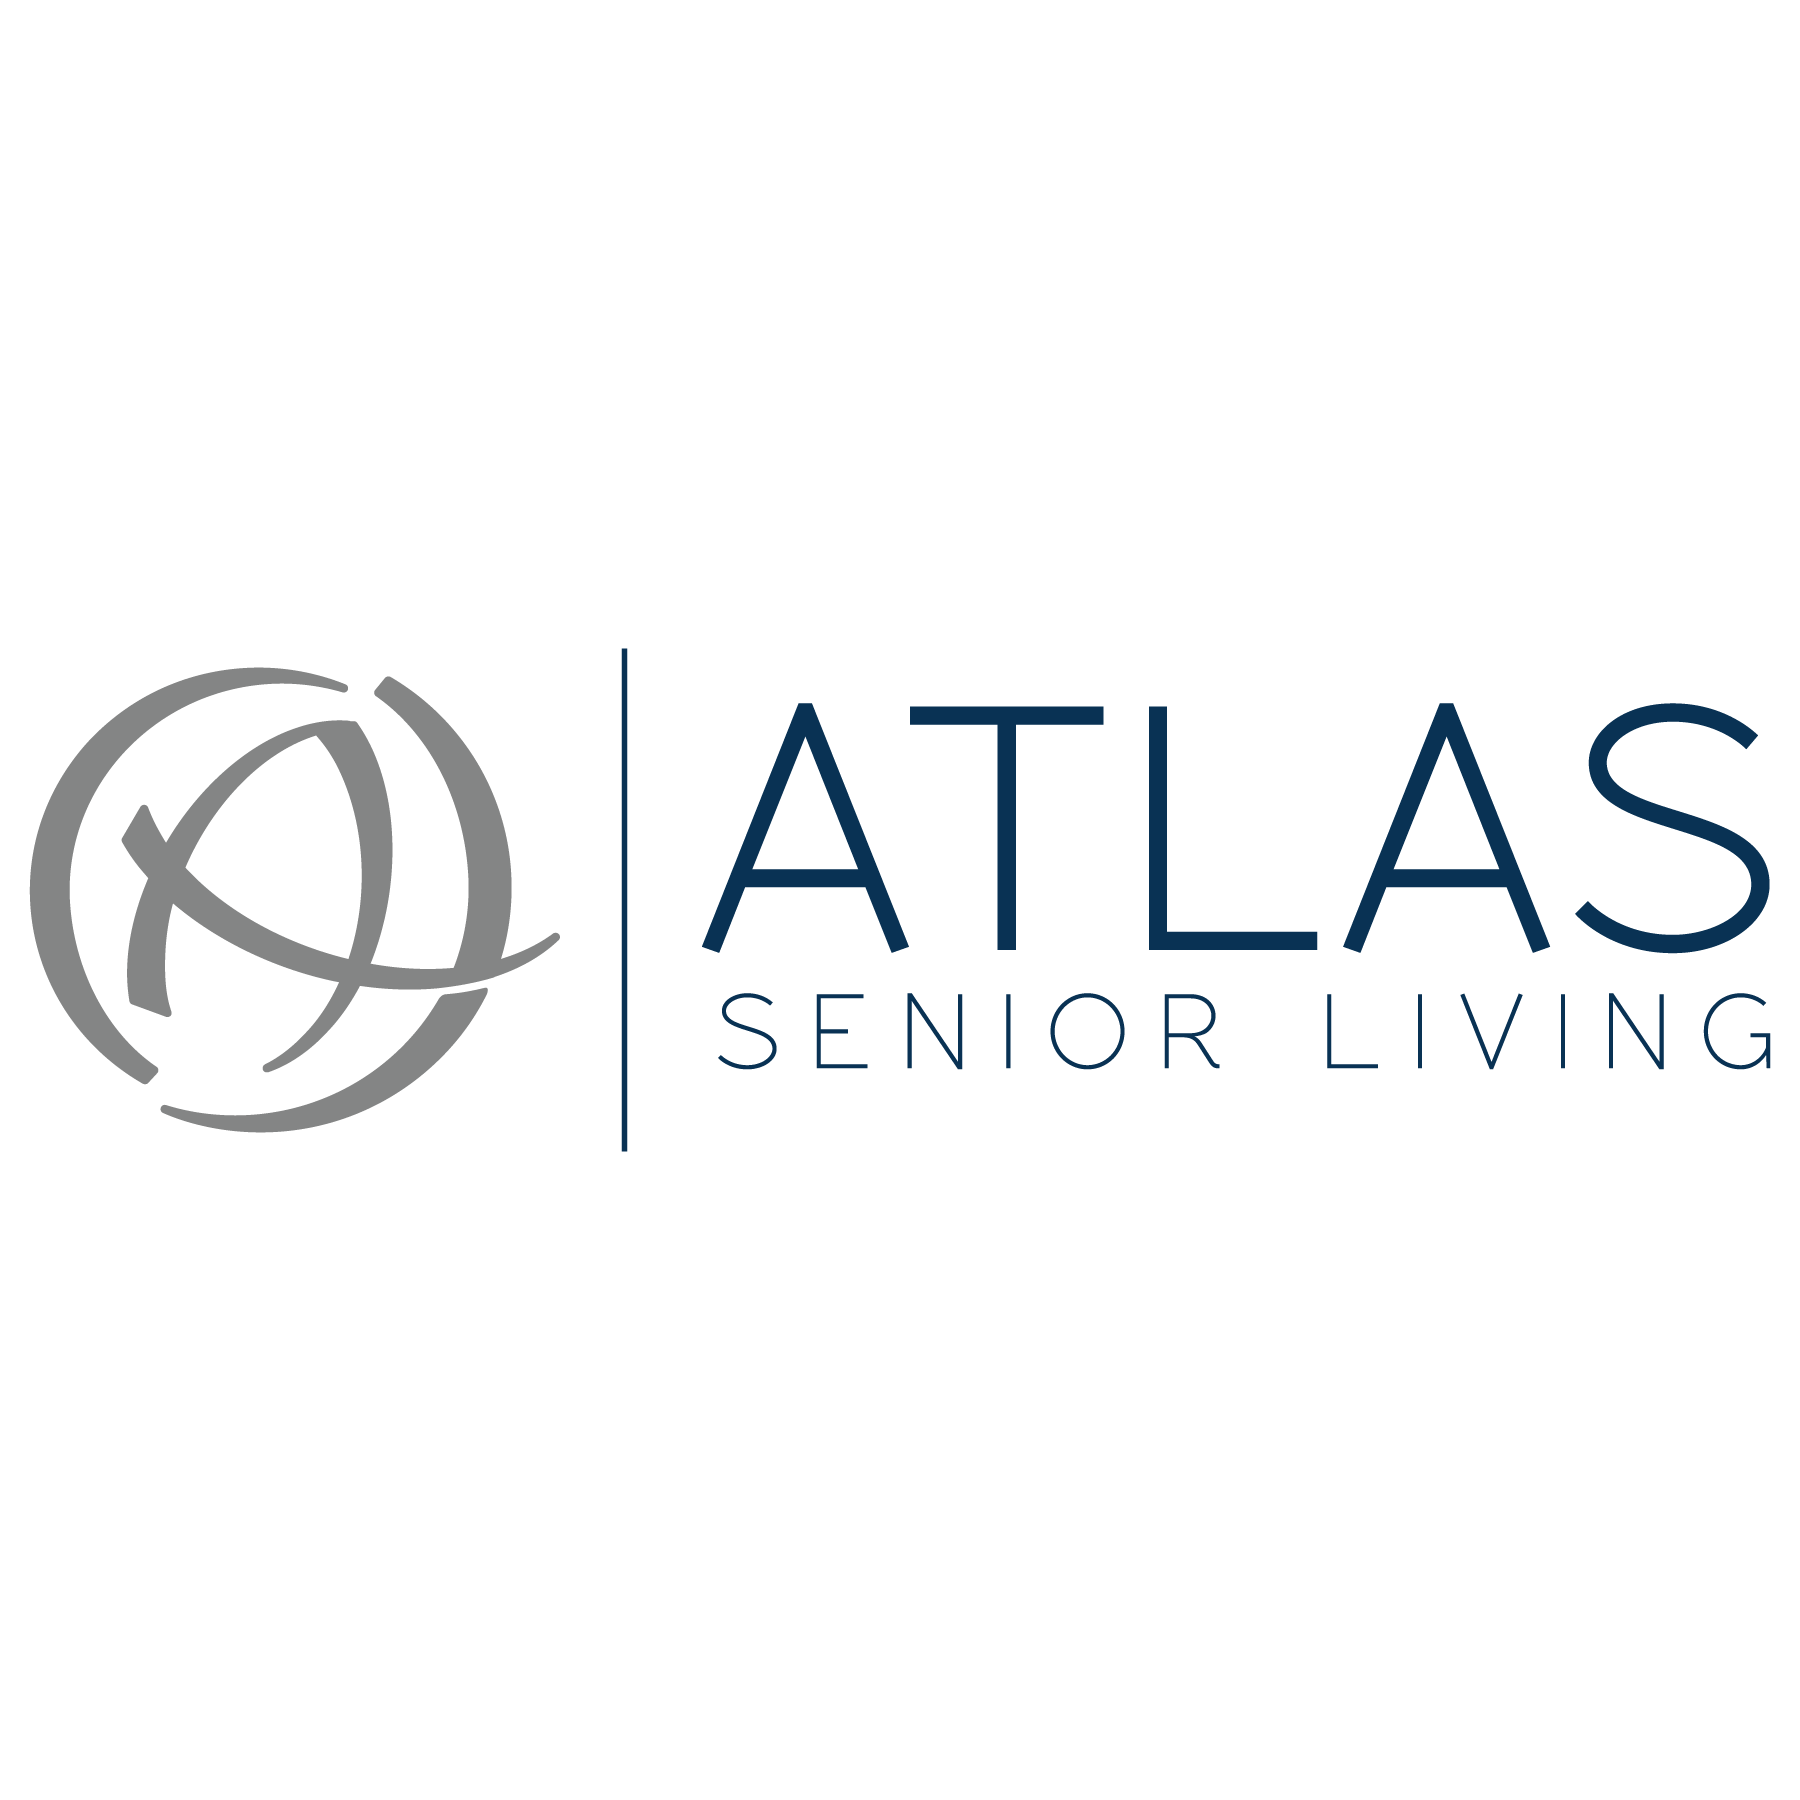 Atlas Senior Living Senior Living Communities in the Southeast image